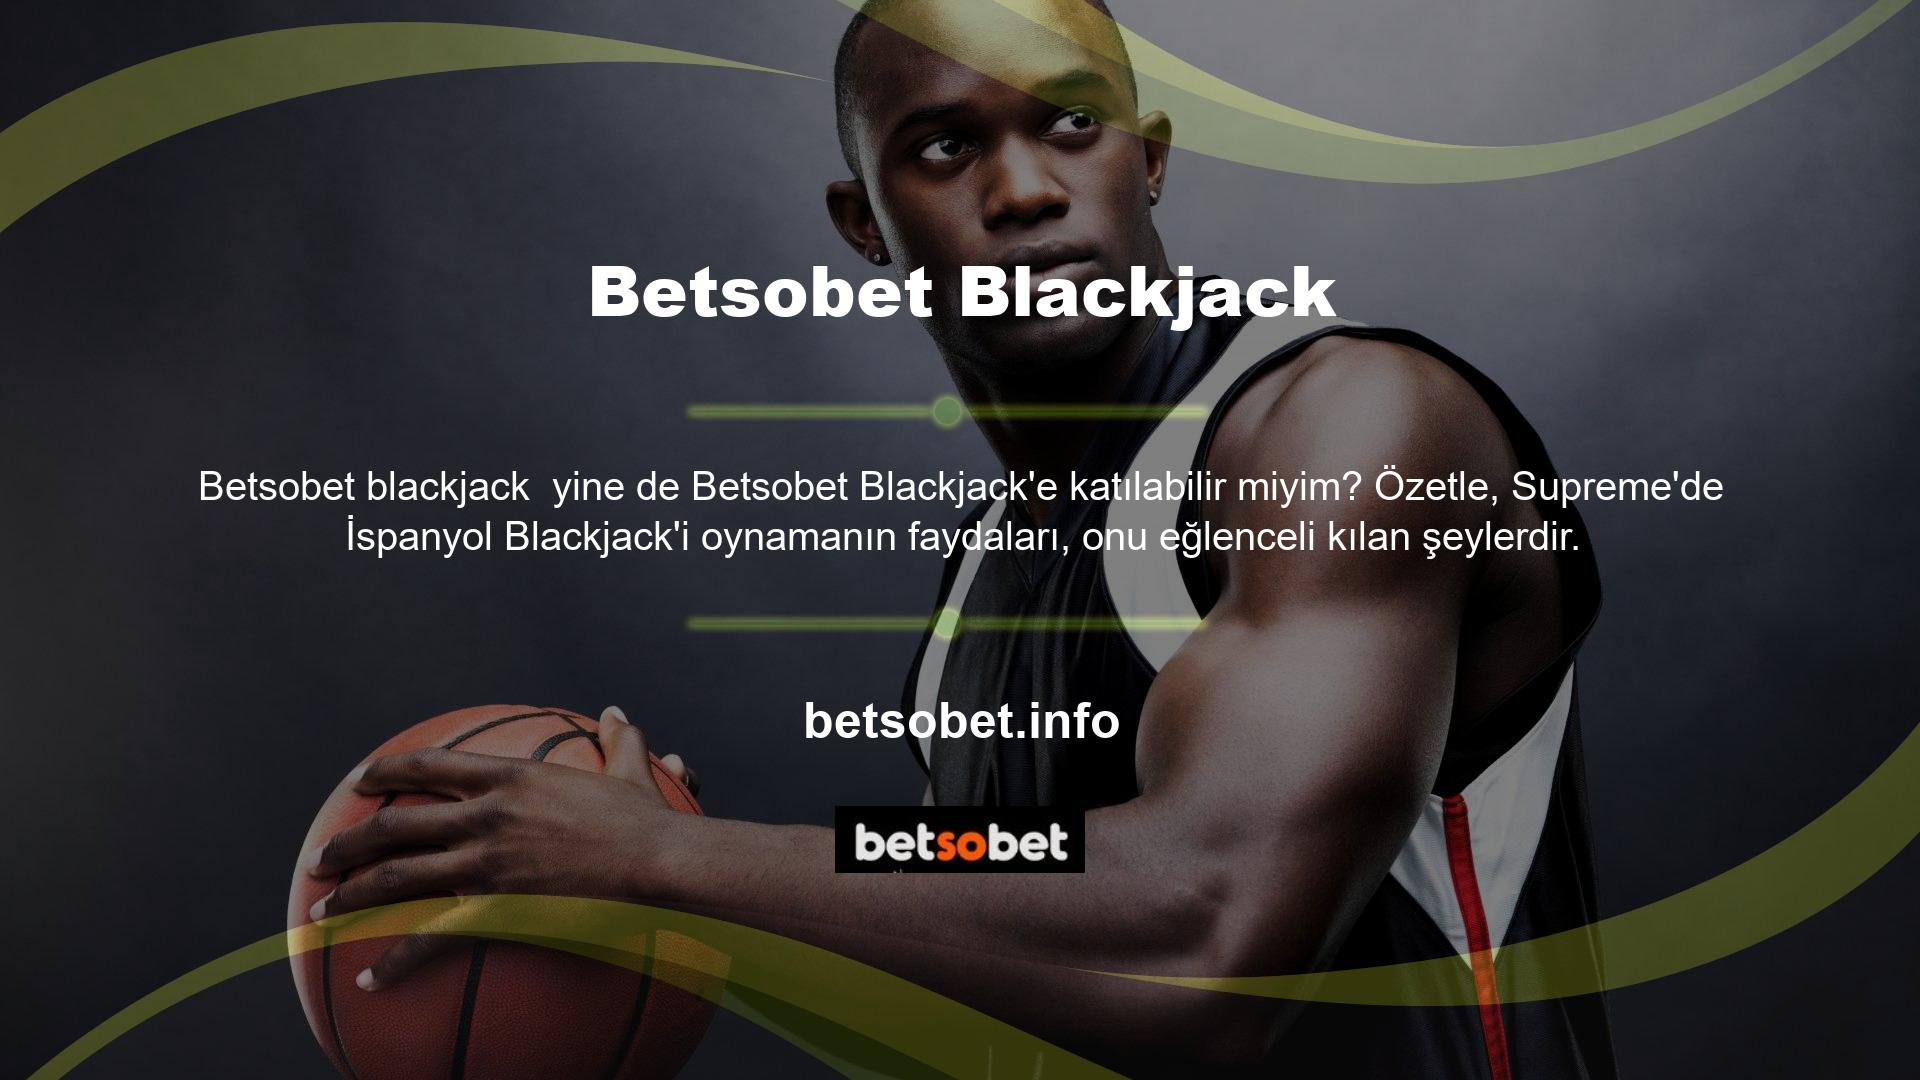 Betsobet blackjack benim için bir seçenek değil